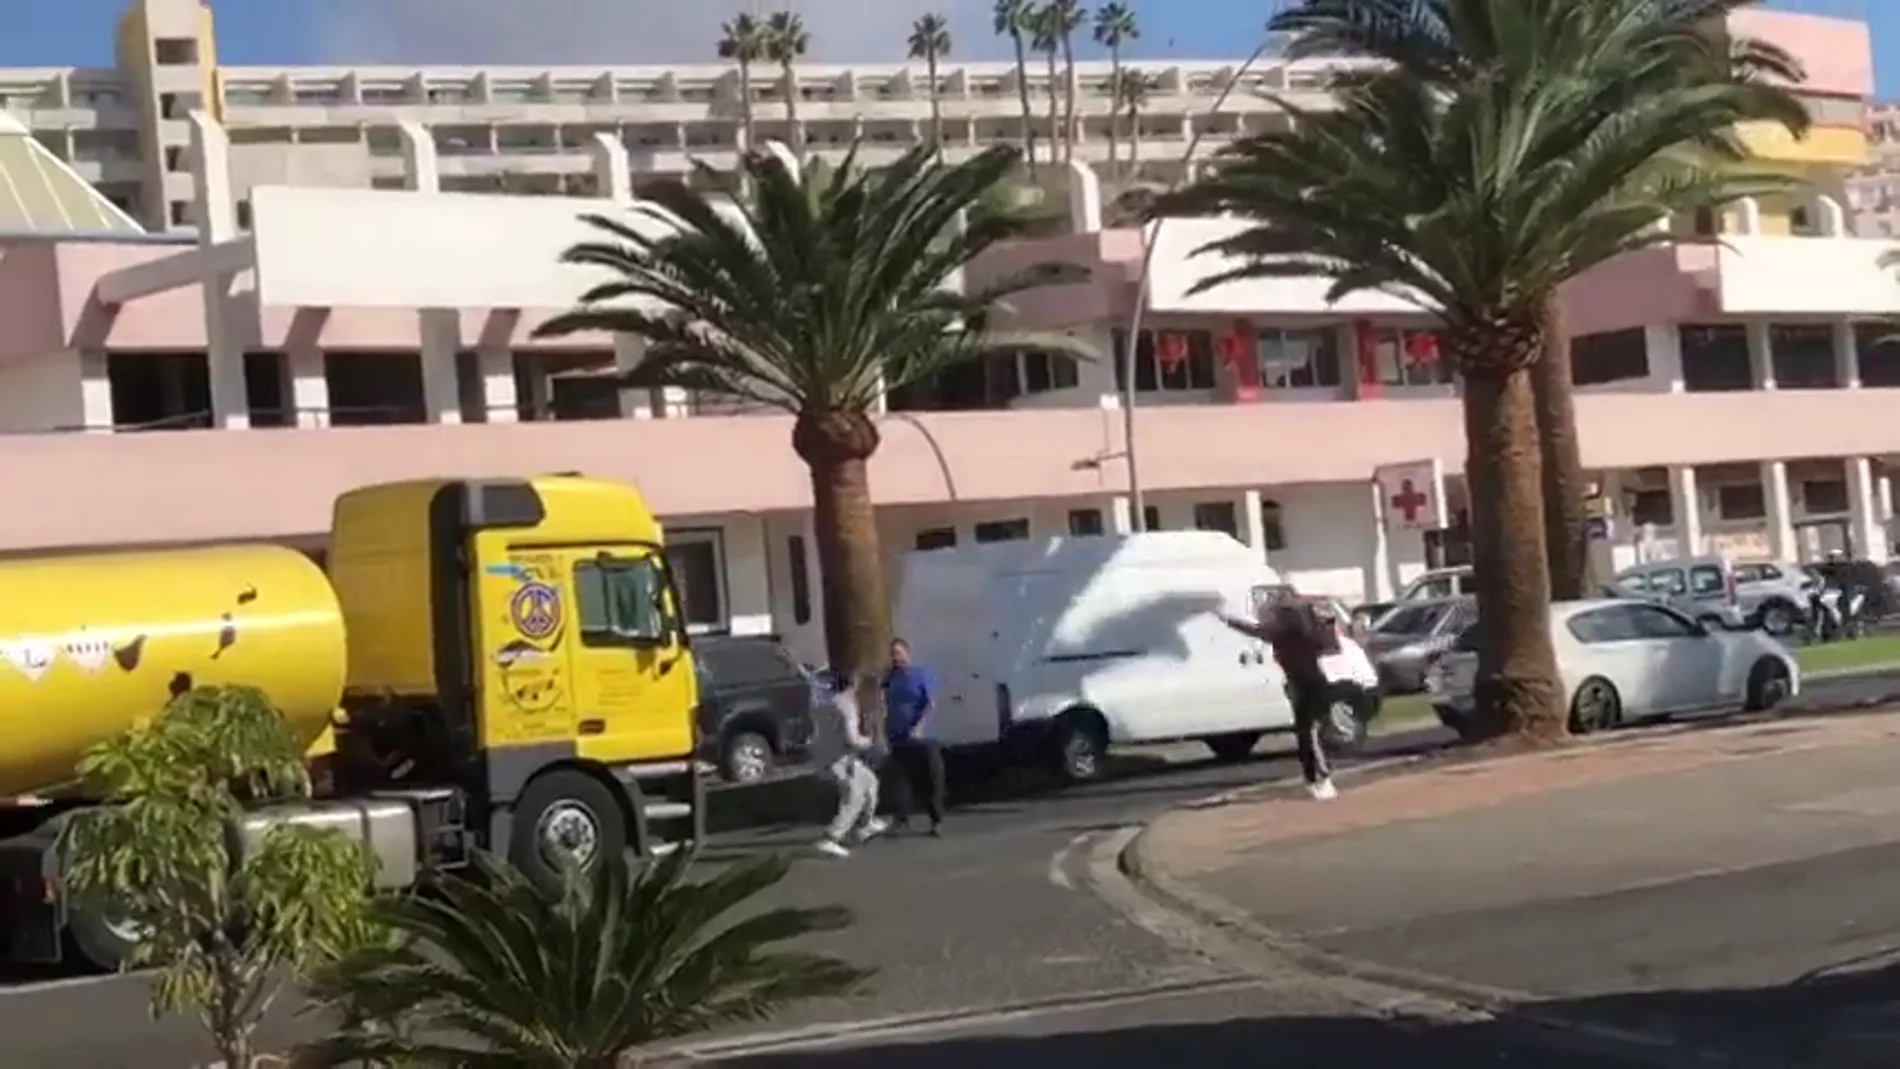 Lanzamiento de piedras, insultos y golpes: una maniobra de un camión desata la ira de un conductor en Gran Canaria